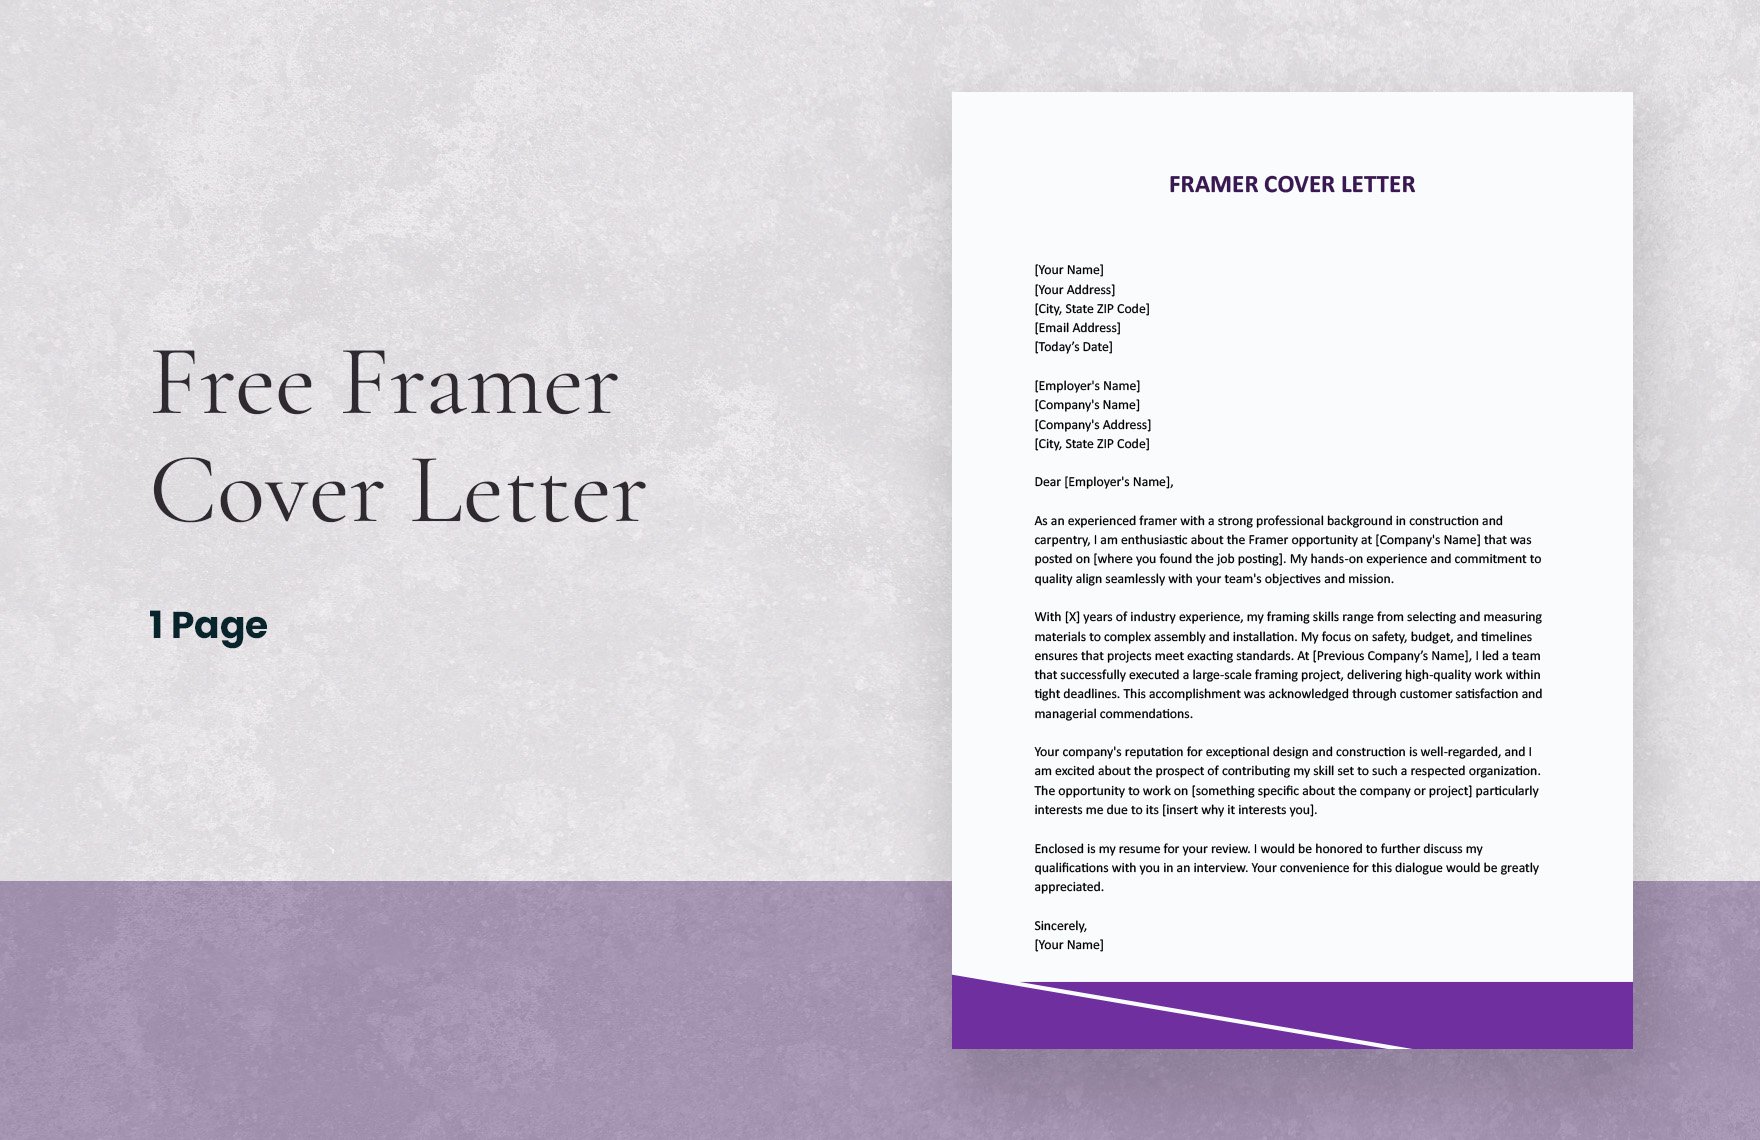 Framer Cover Letter in Word, Google Docs